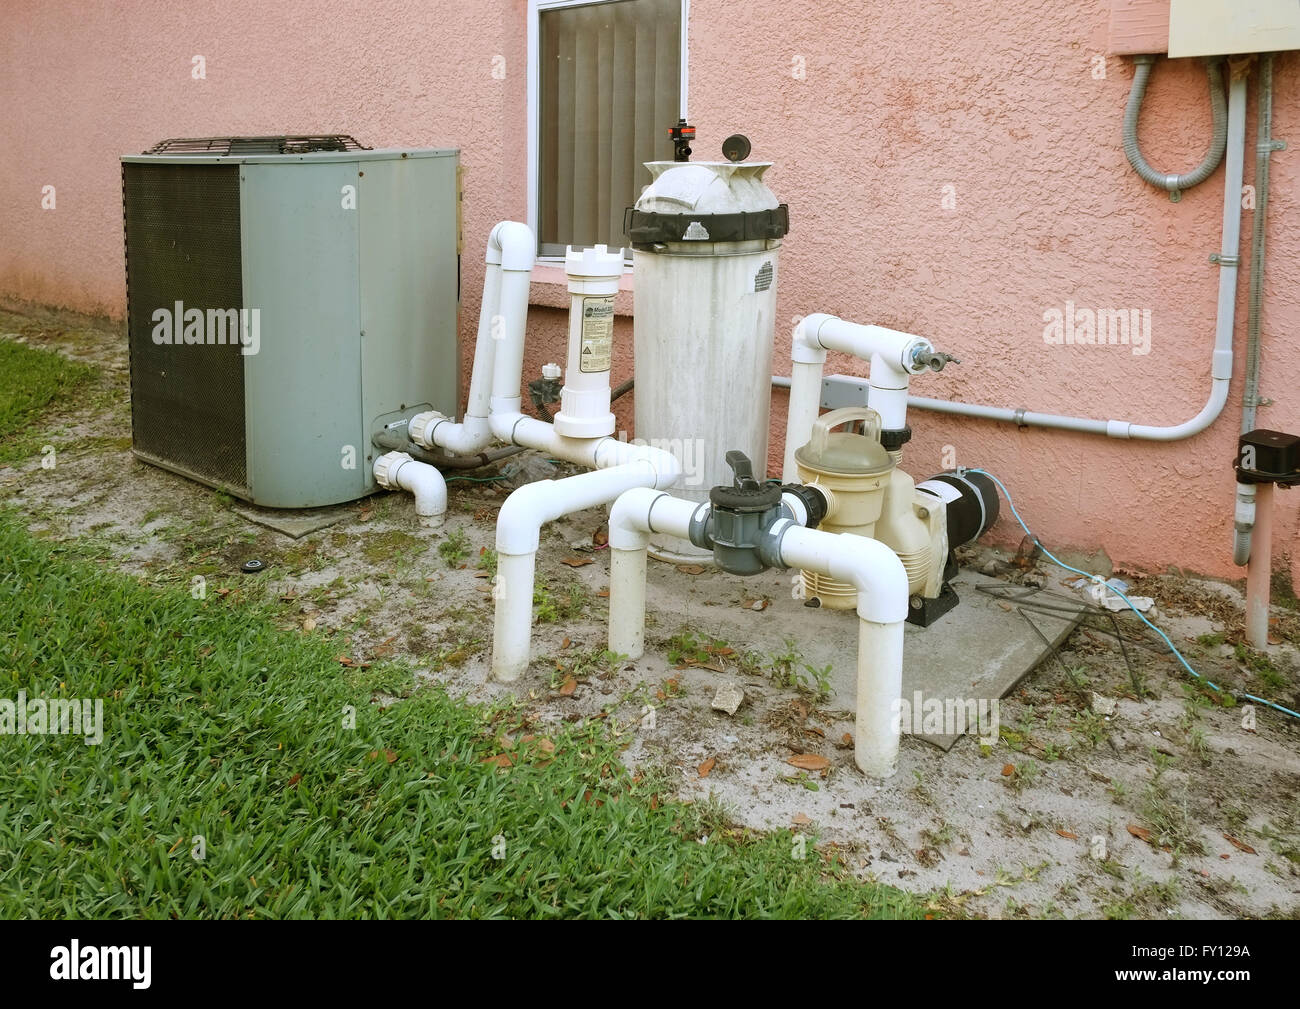 Amerikanische nationale Schwimmbad Filter und Heizung ein Florida-Pool nach  Hause, April 2016 Stockfotografie - Alamy